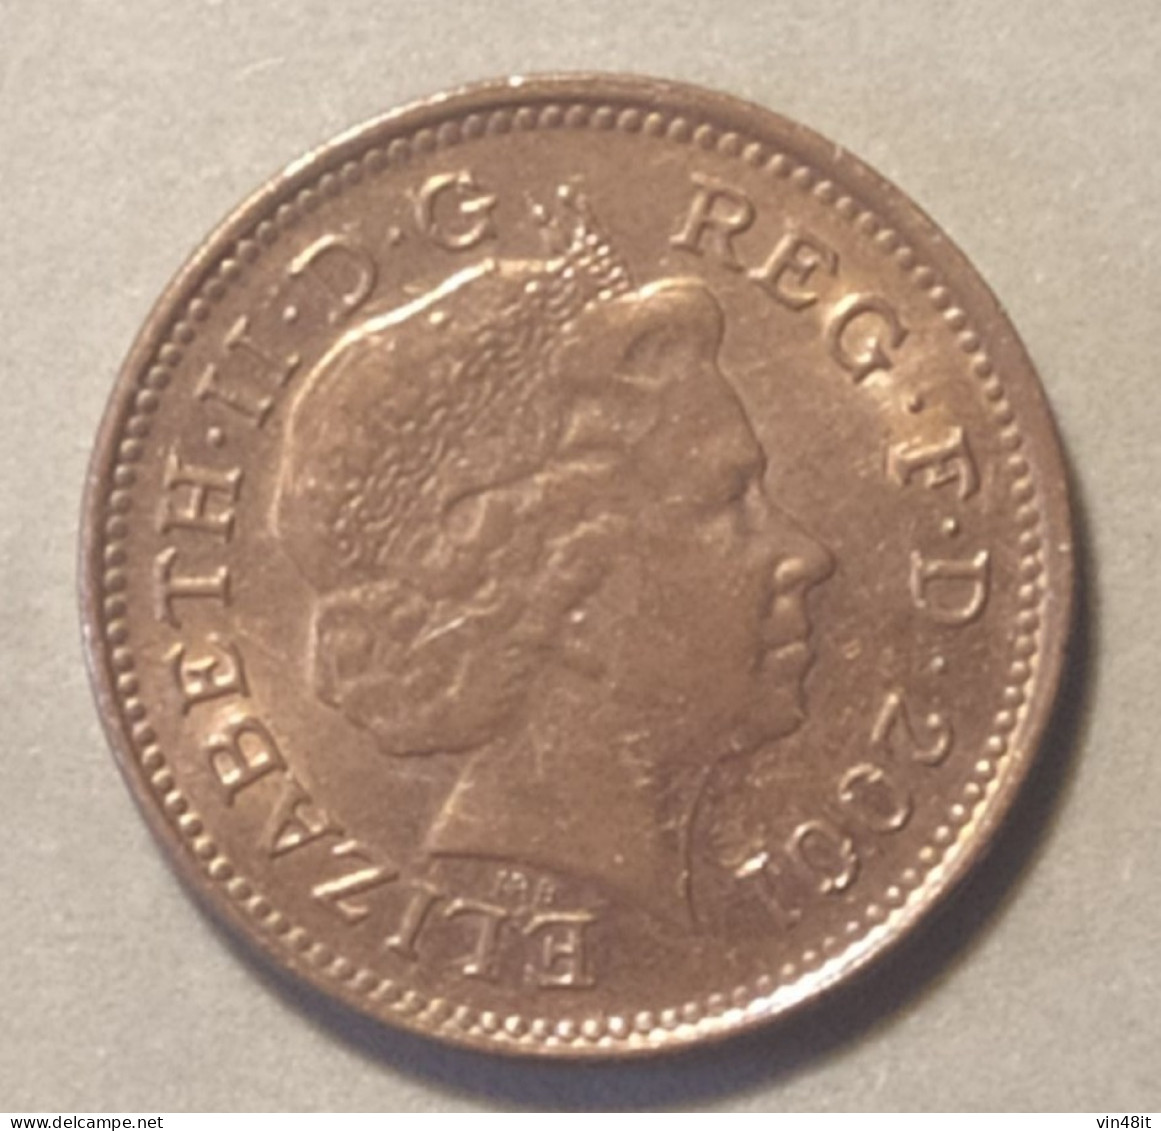 2001 -  GRAN BRETAGNA  -  MONETA  DEL VALORE DI  -  ONE PENNY  - USATA - 1 Penny & 1 New Penny